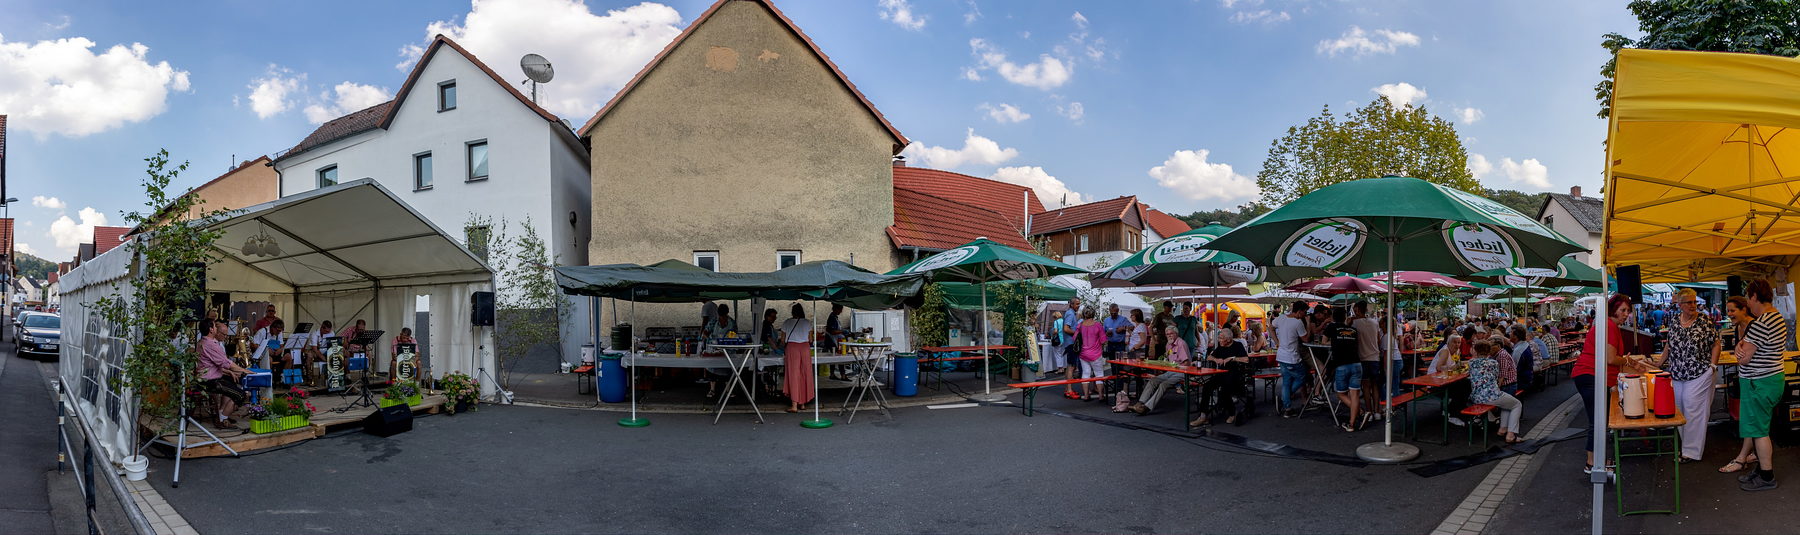 2019-08-25 - Brunnenfest 18.jpg